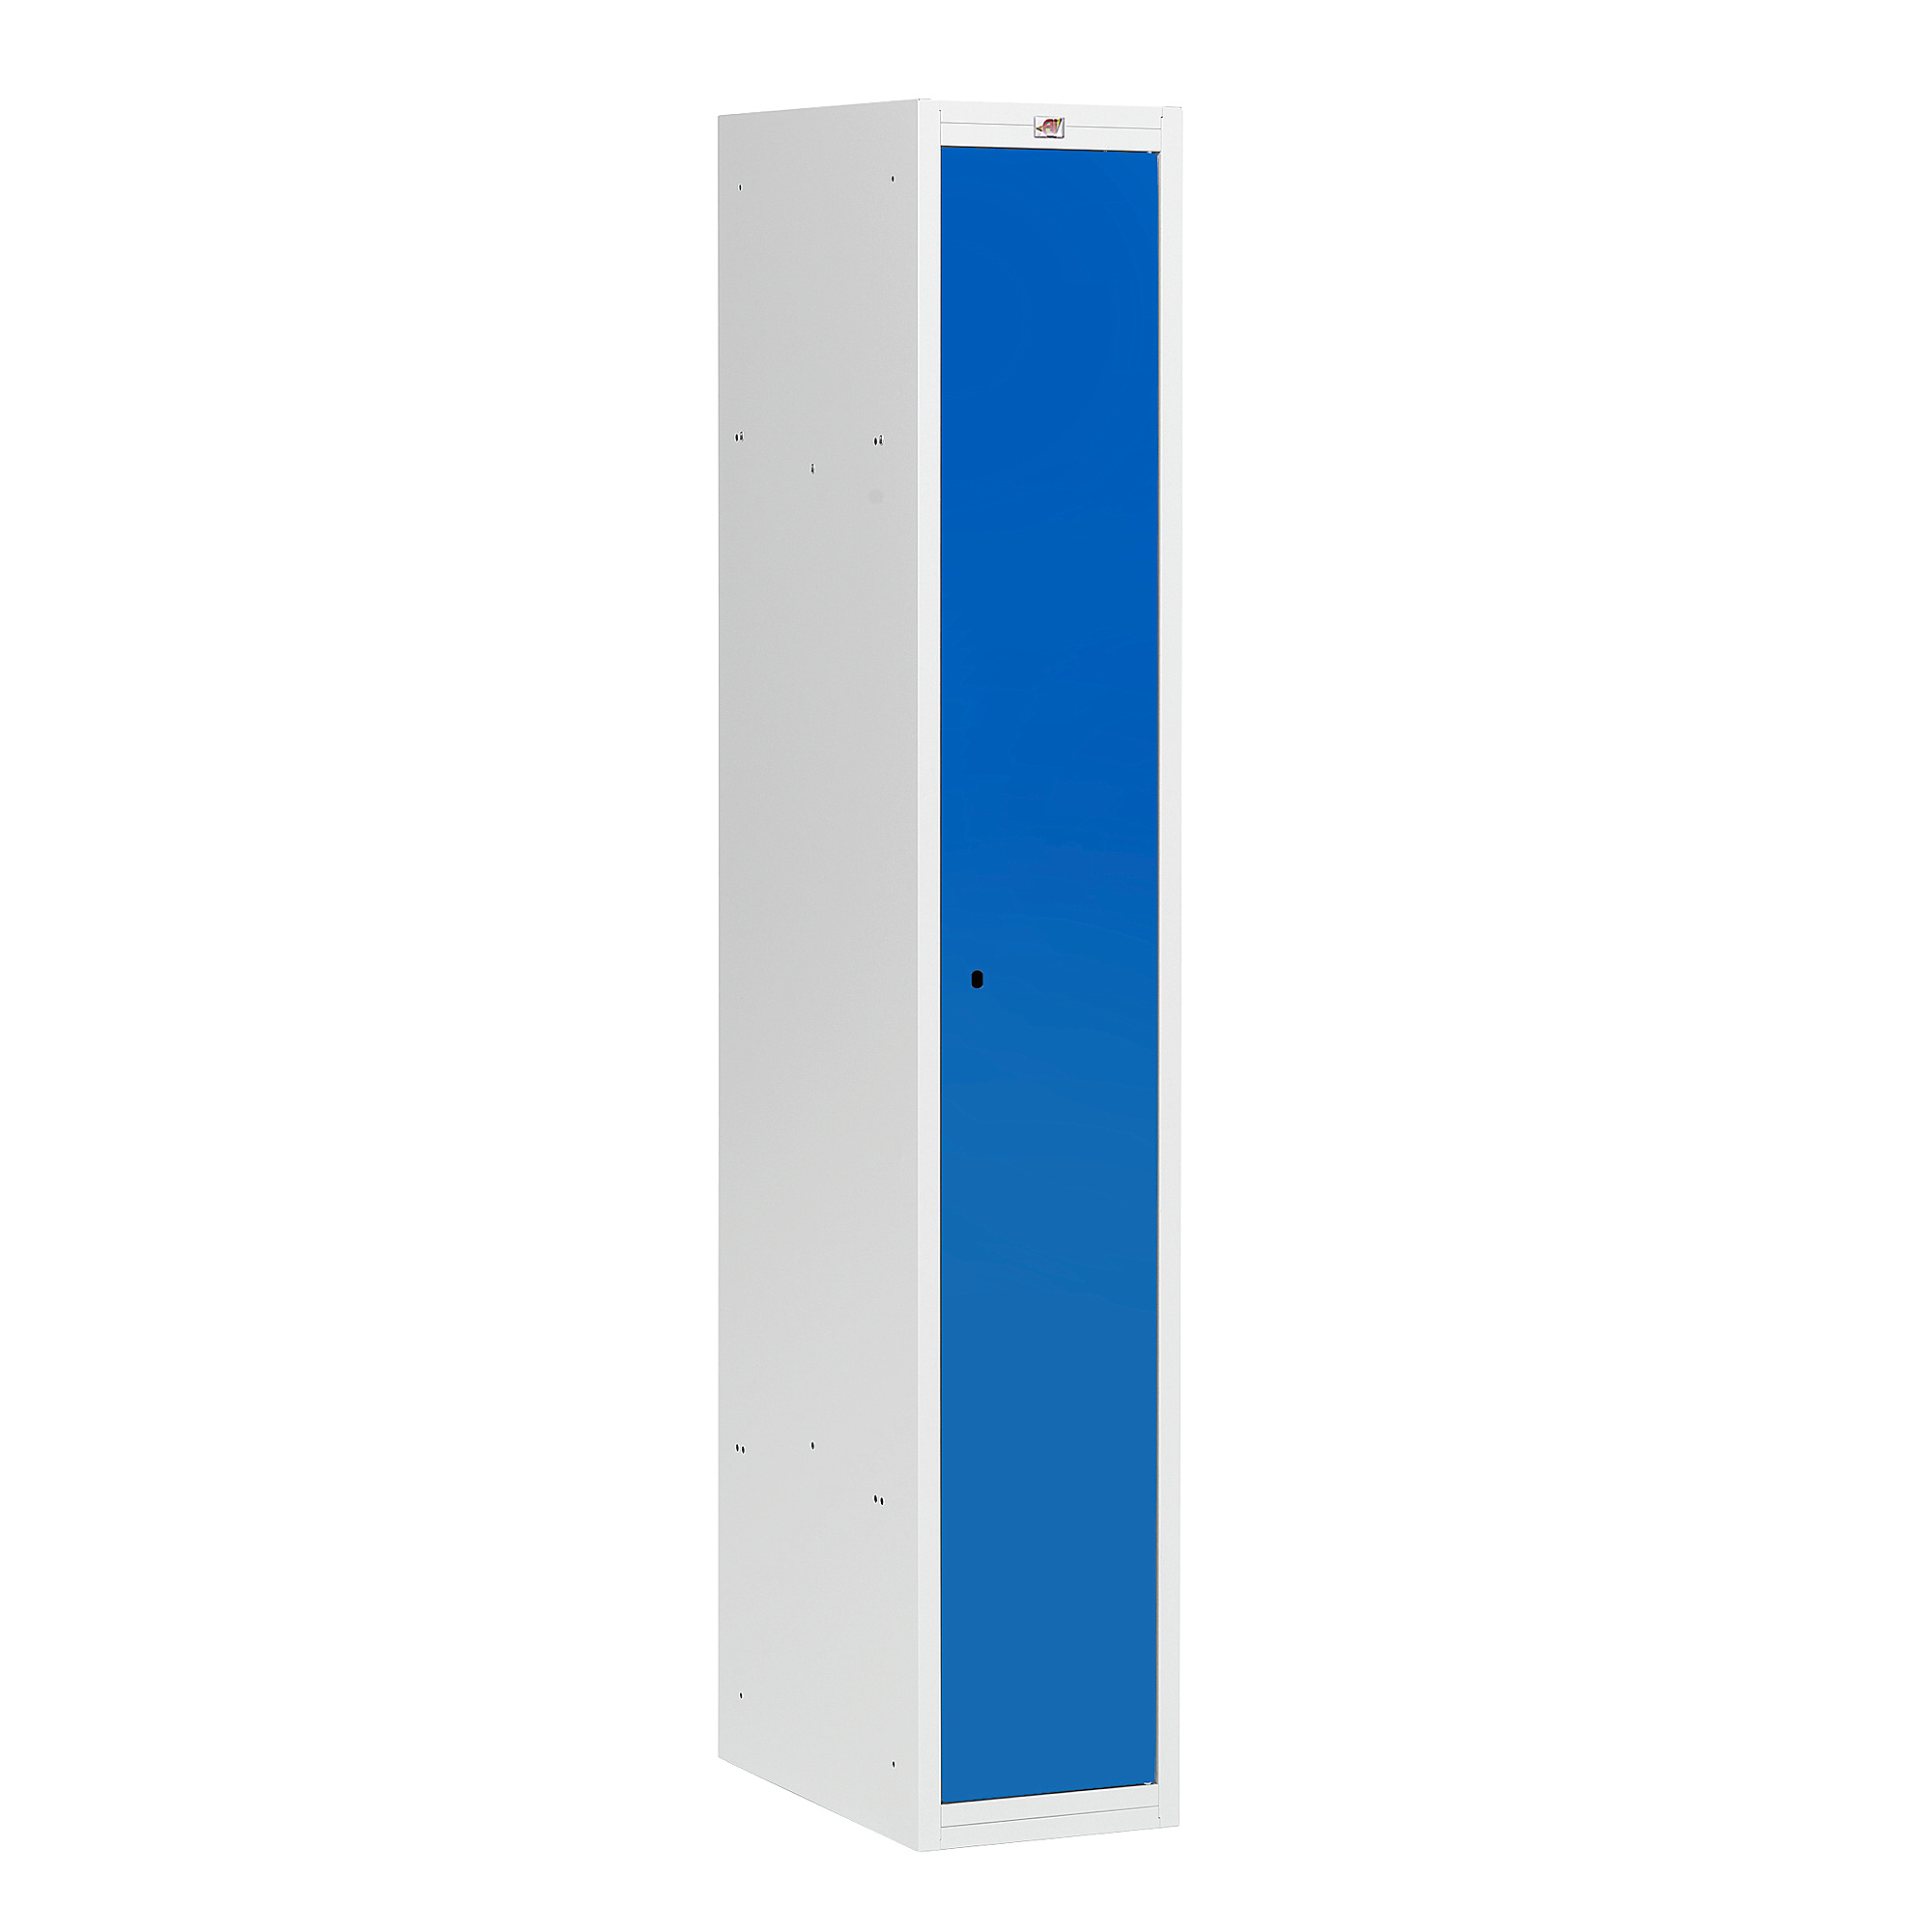 Šatní skříňka COACH, nesmontovaná, 1 sekce, 1 dveře, šedá, modré dveře